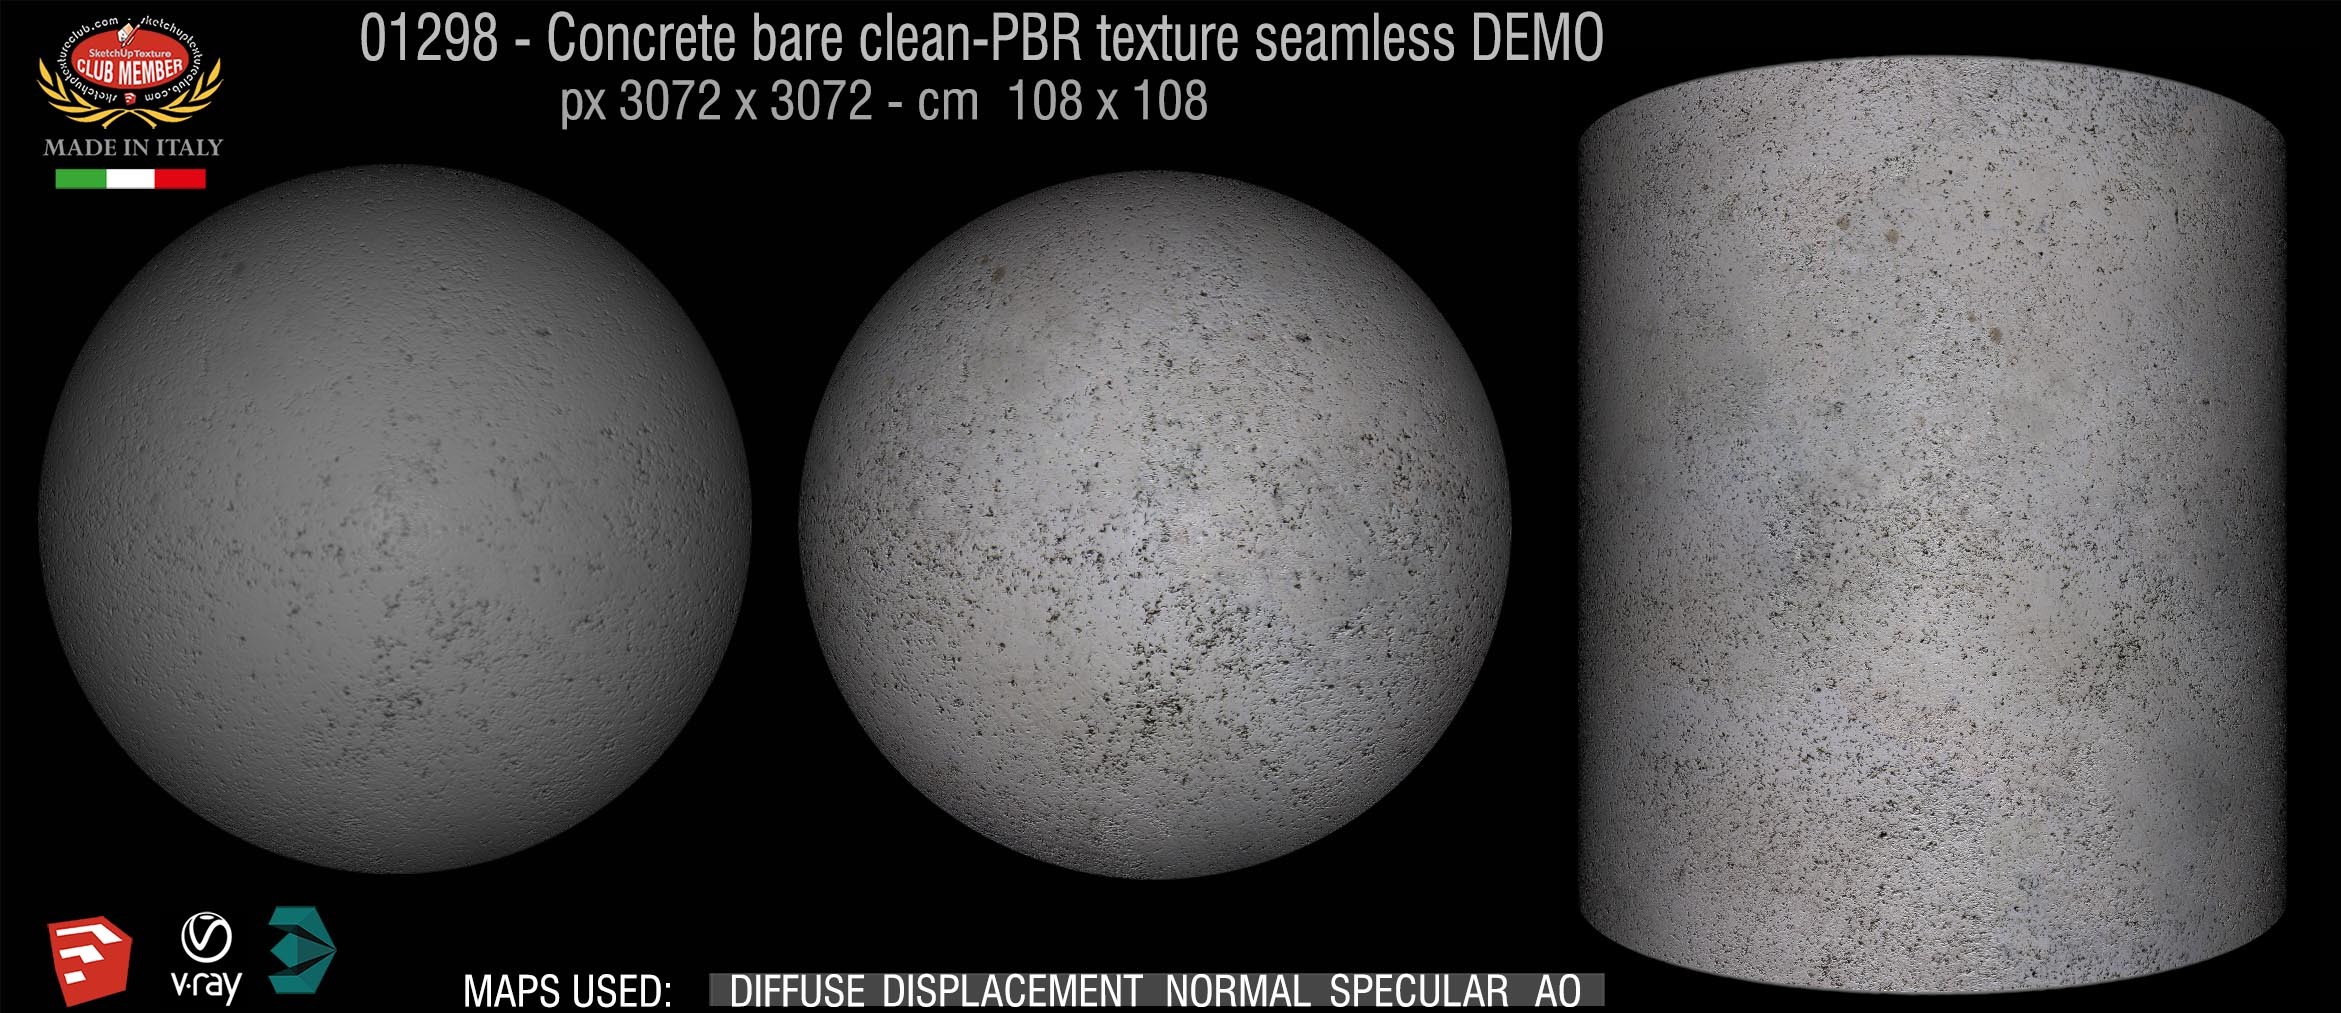 01298 Concrete bare clean-PBR texture seamless DEMO